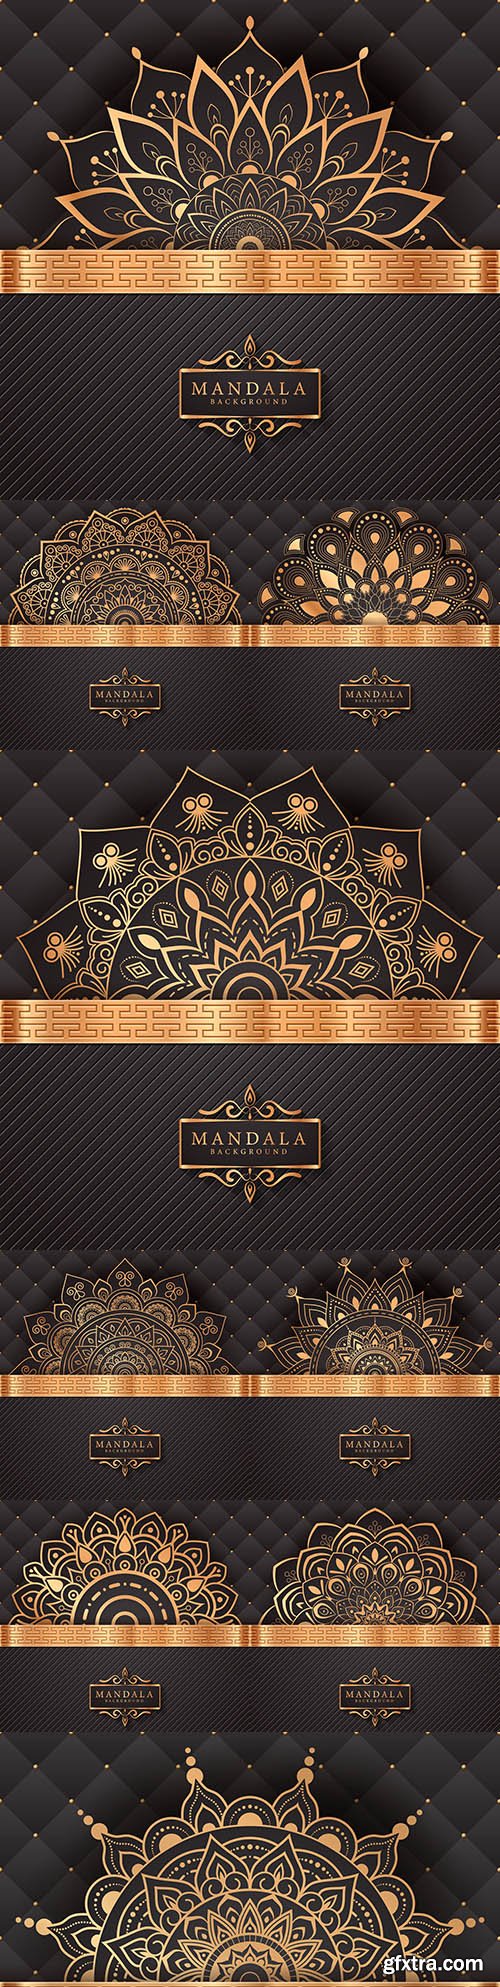 Mandala creative luxury gold design background 6